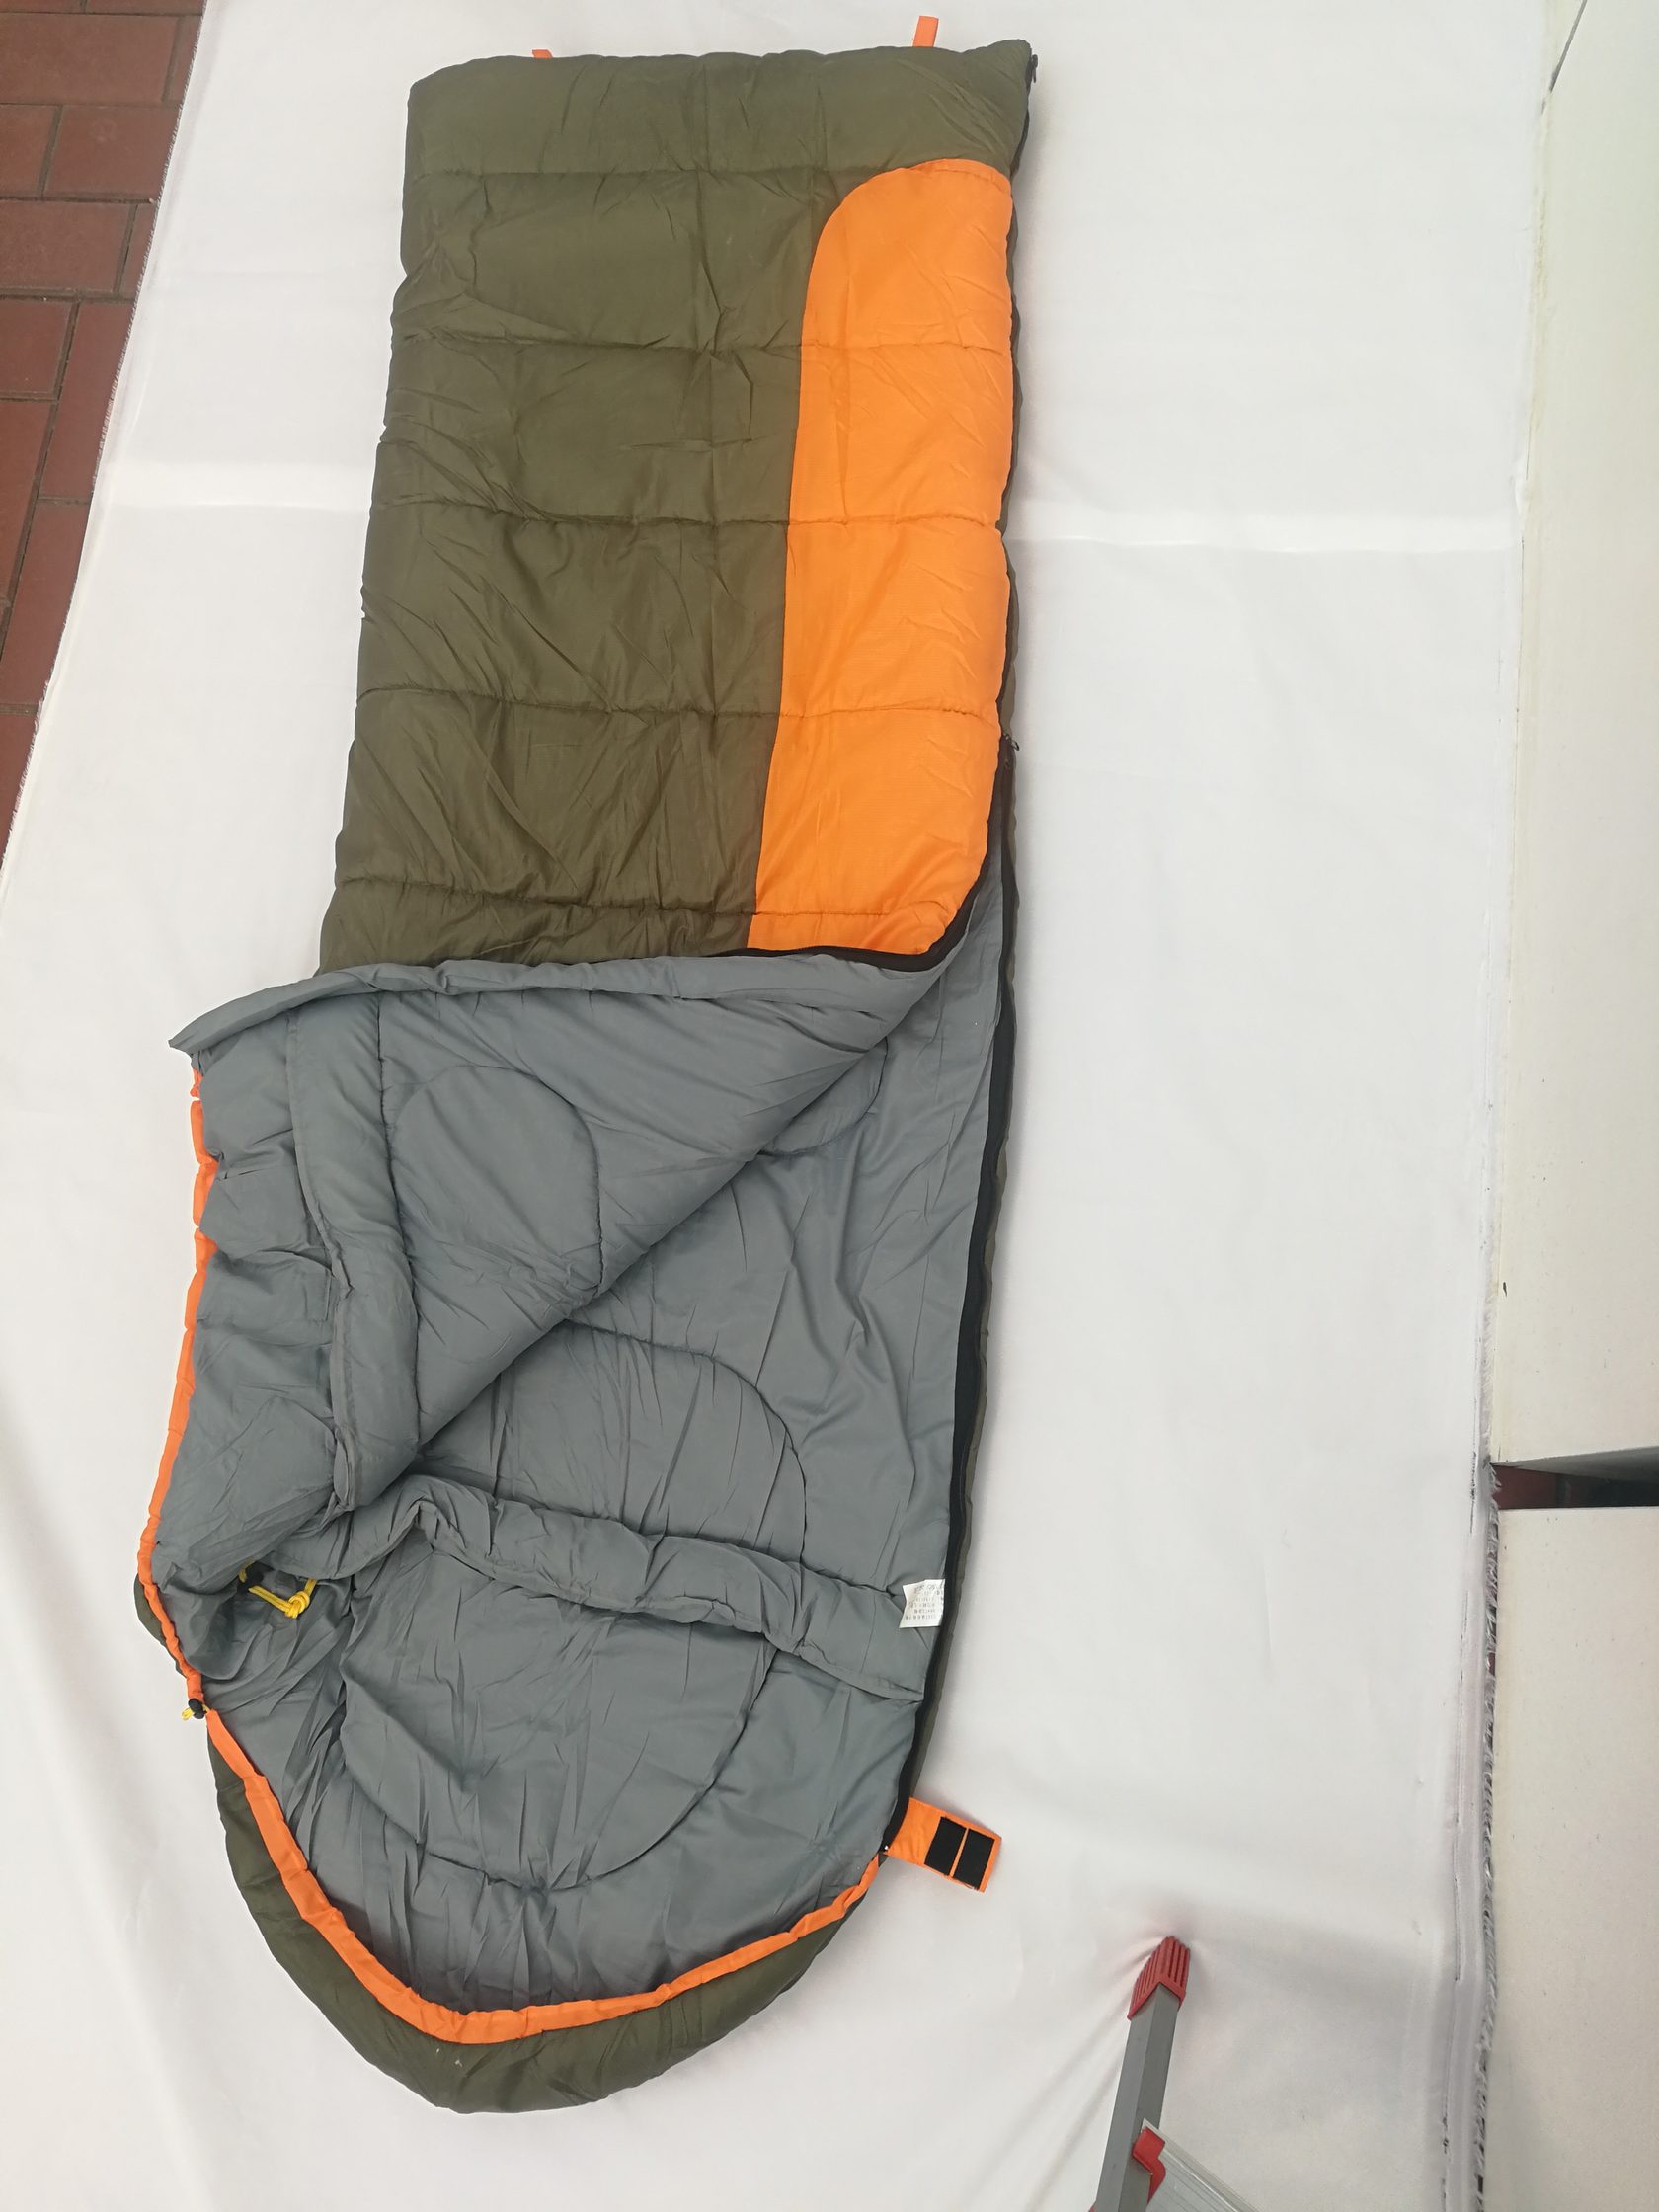 SL-CT-1132 SLEEPING BAG